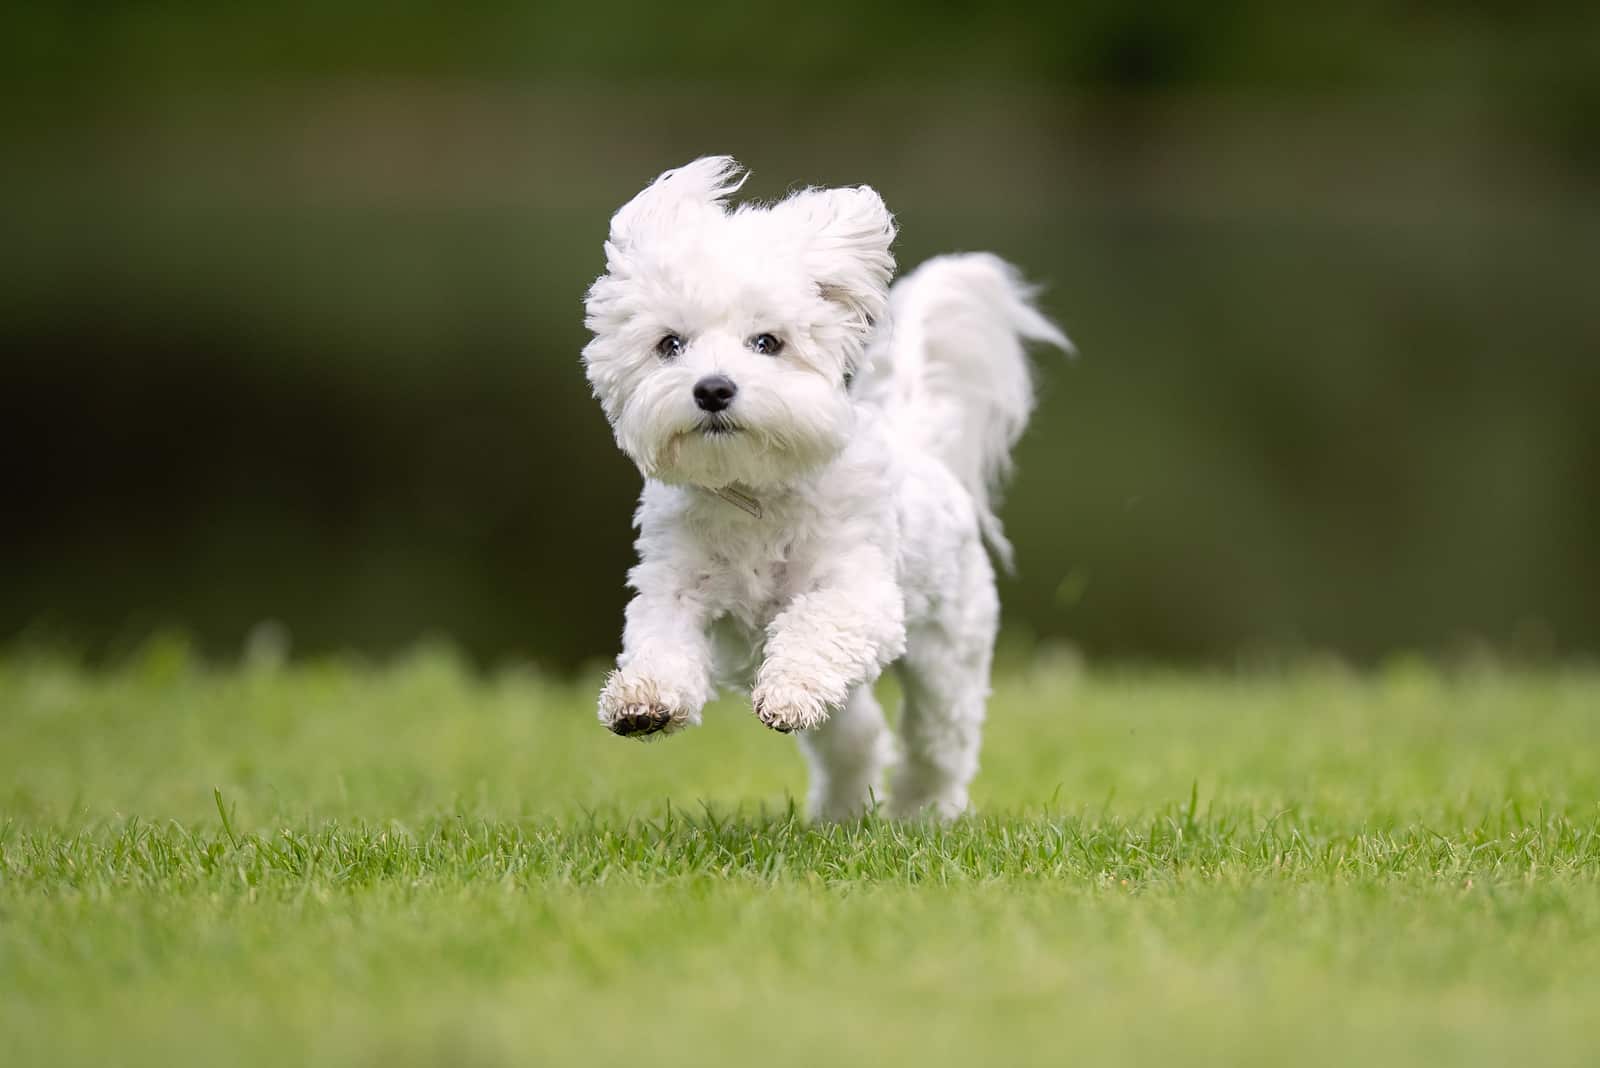 maltese dog running outside on grass